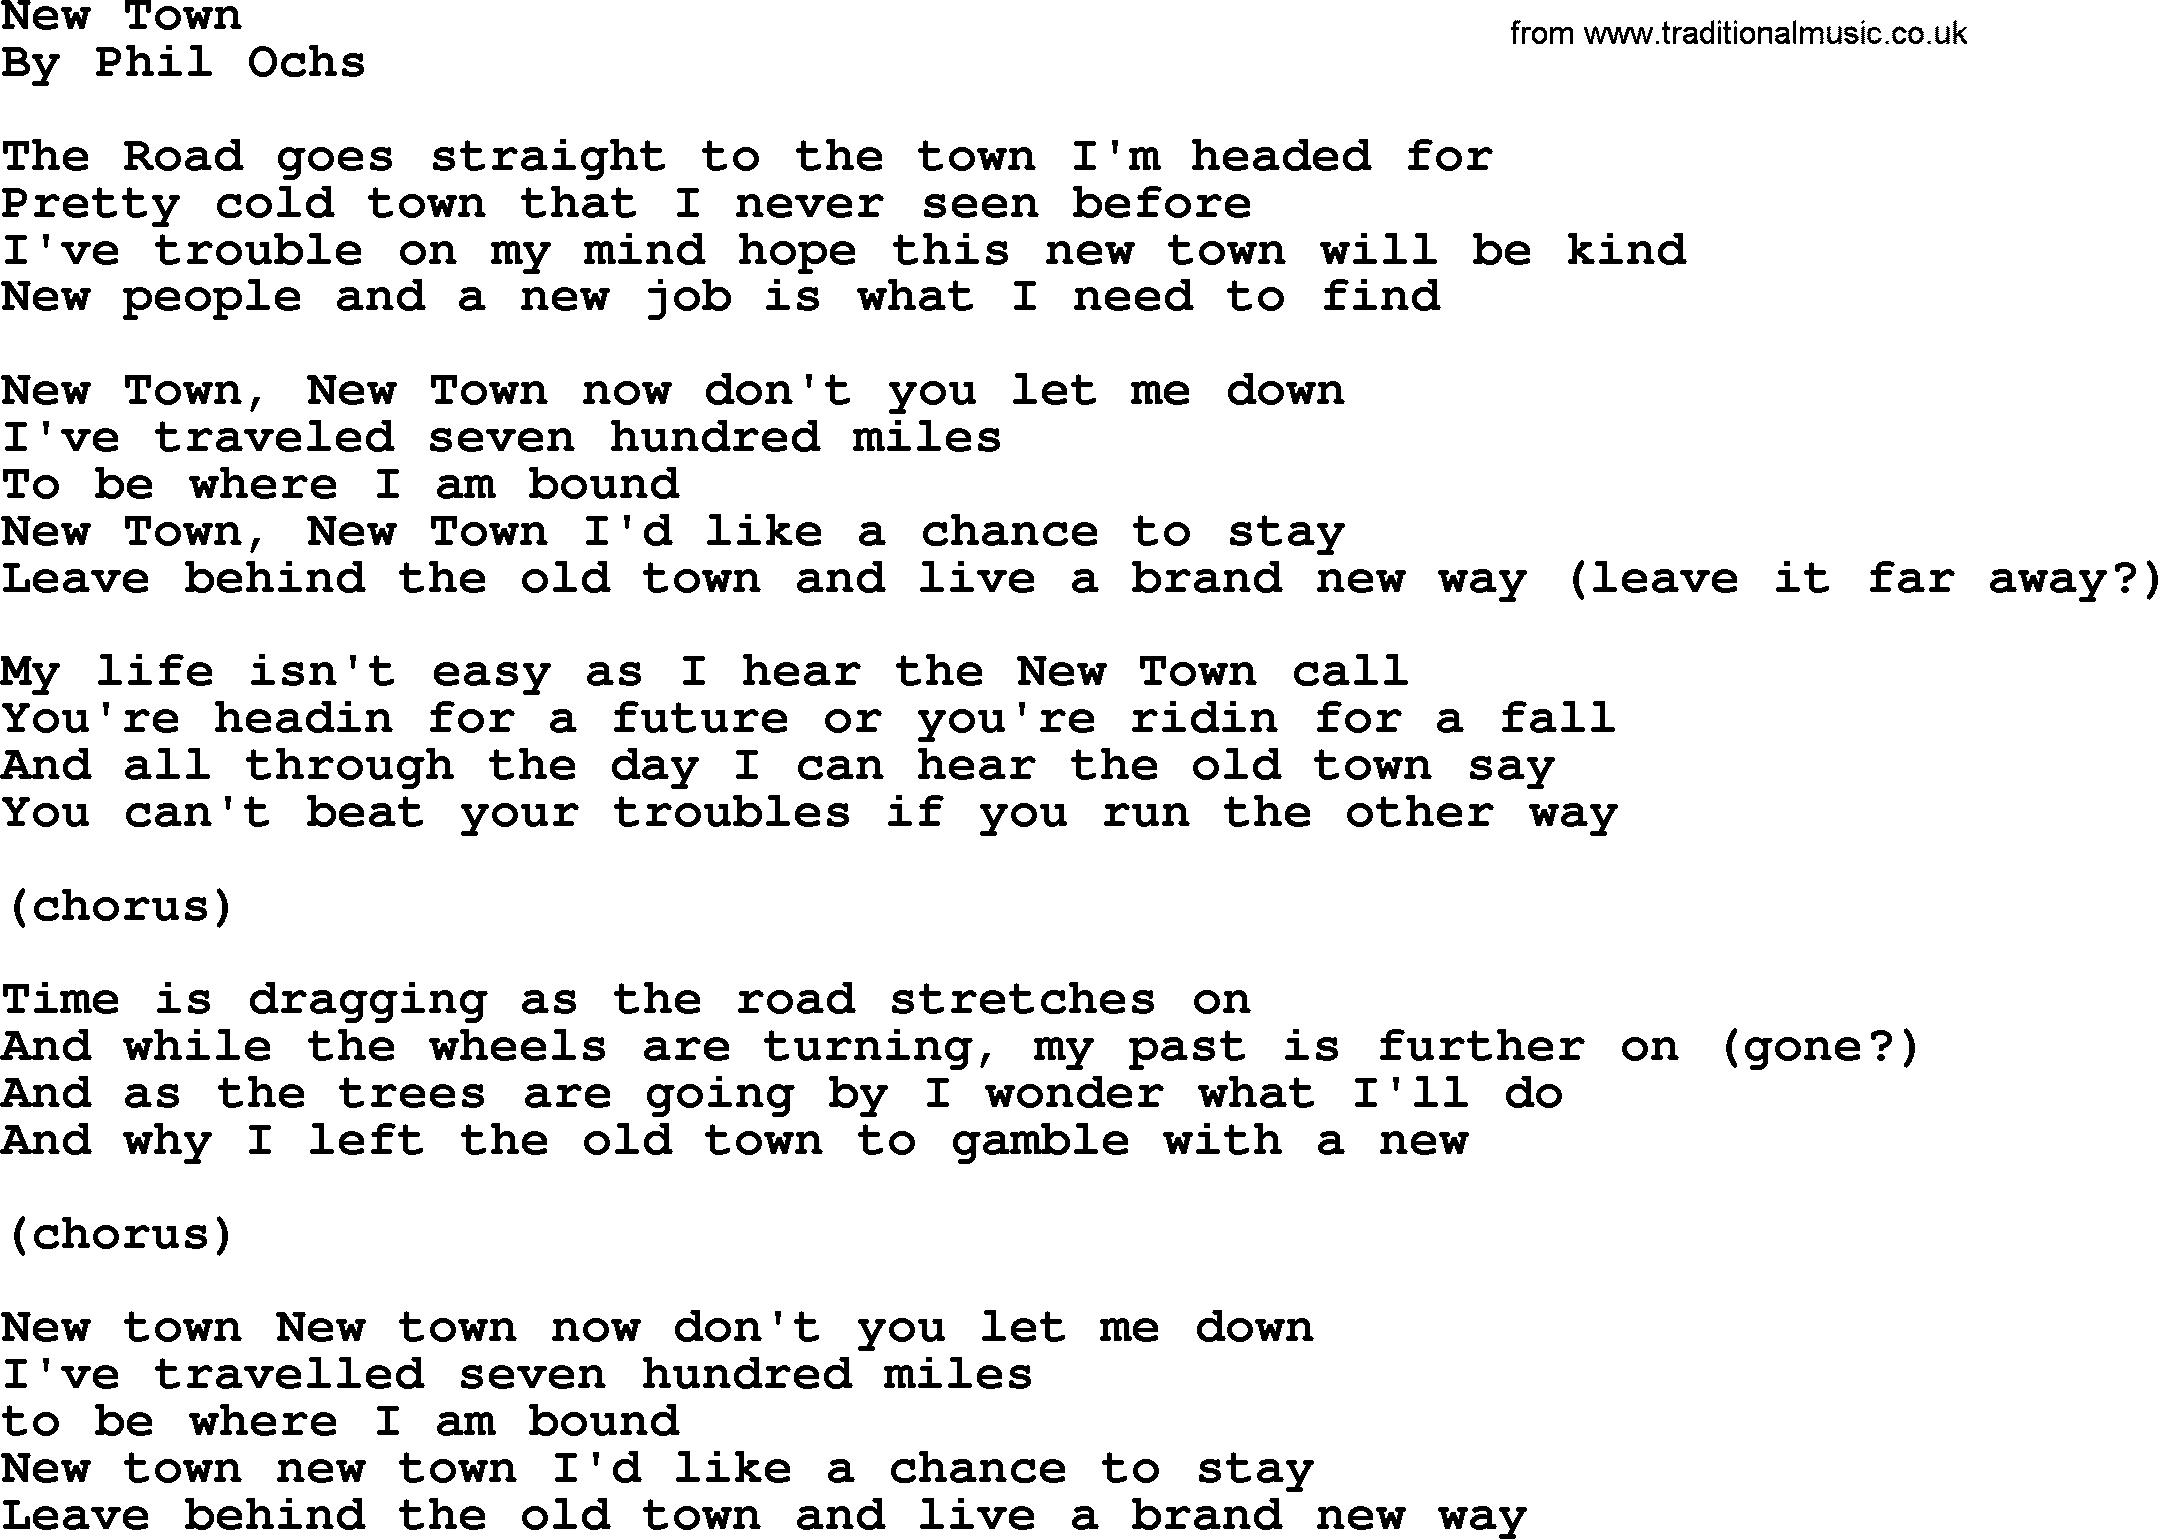 Phil Ochs song New Town, lyrics